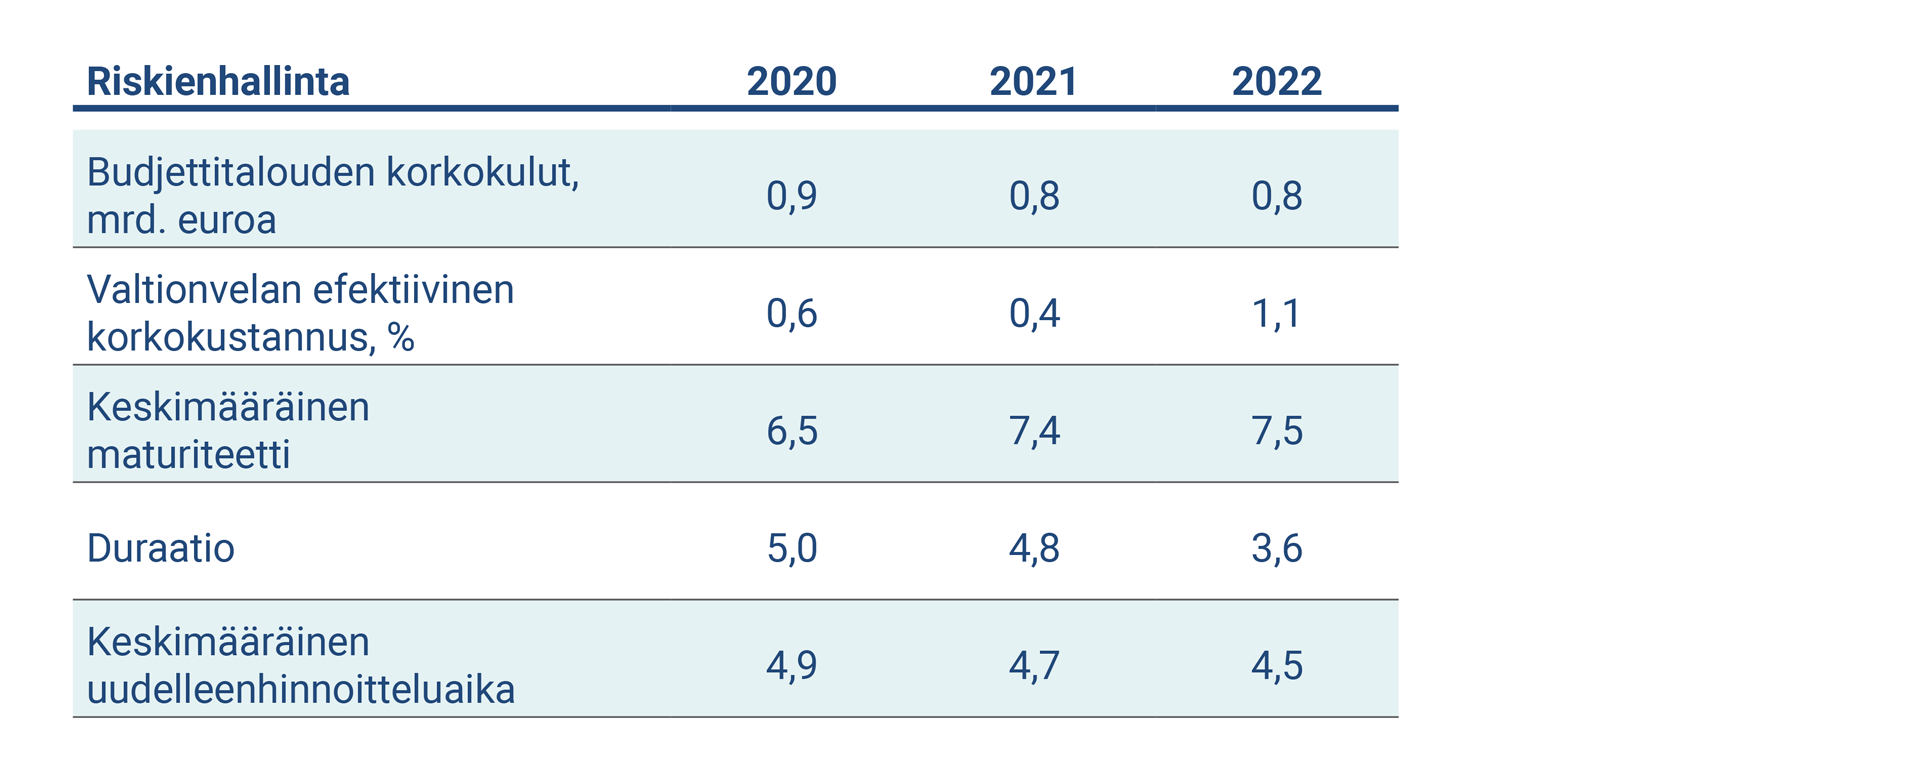 Taulukko kuvaa riskienhallinnan keskeiset tunnusluvut vuosina 2020-2022.